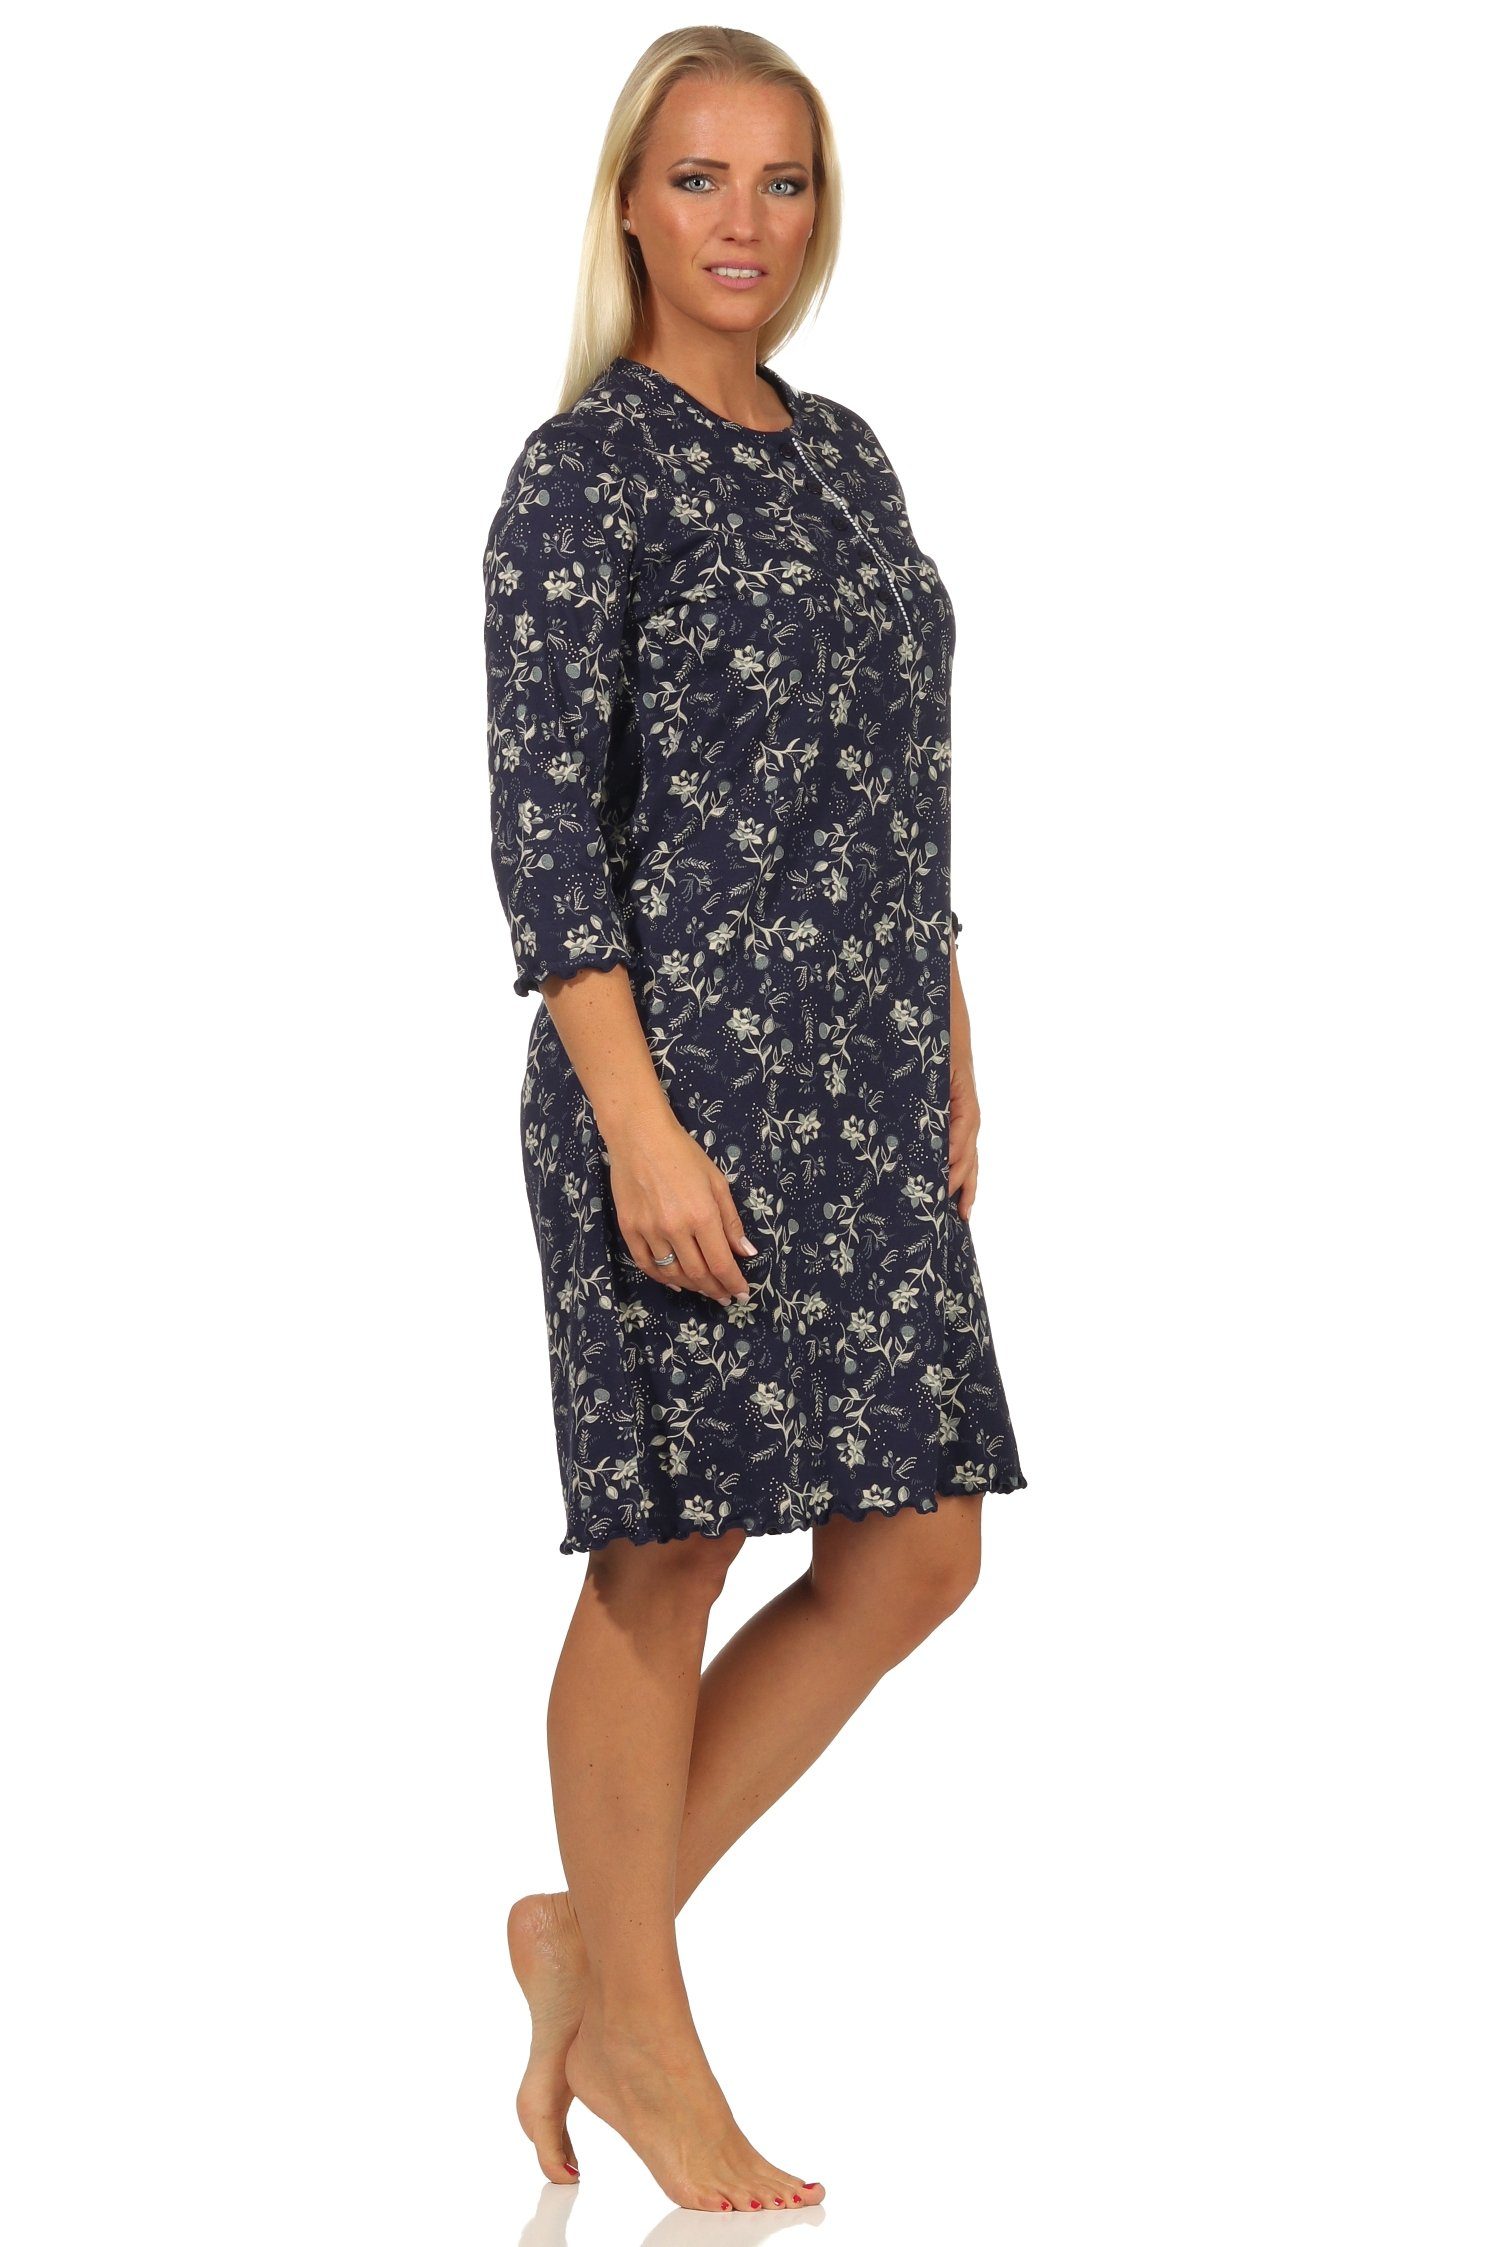 Normann Nachthemd Damen Nachthemd mit Optik marine am floraler Hals in Knopfleiste